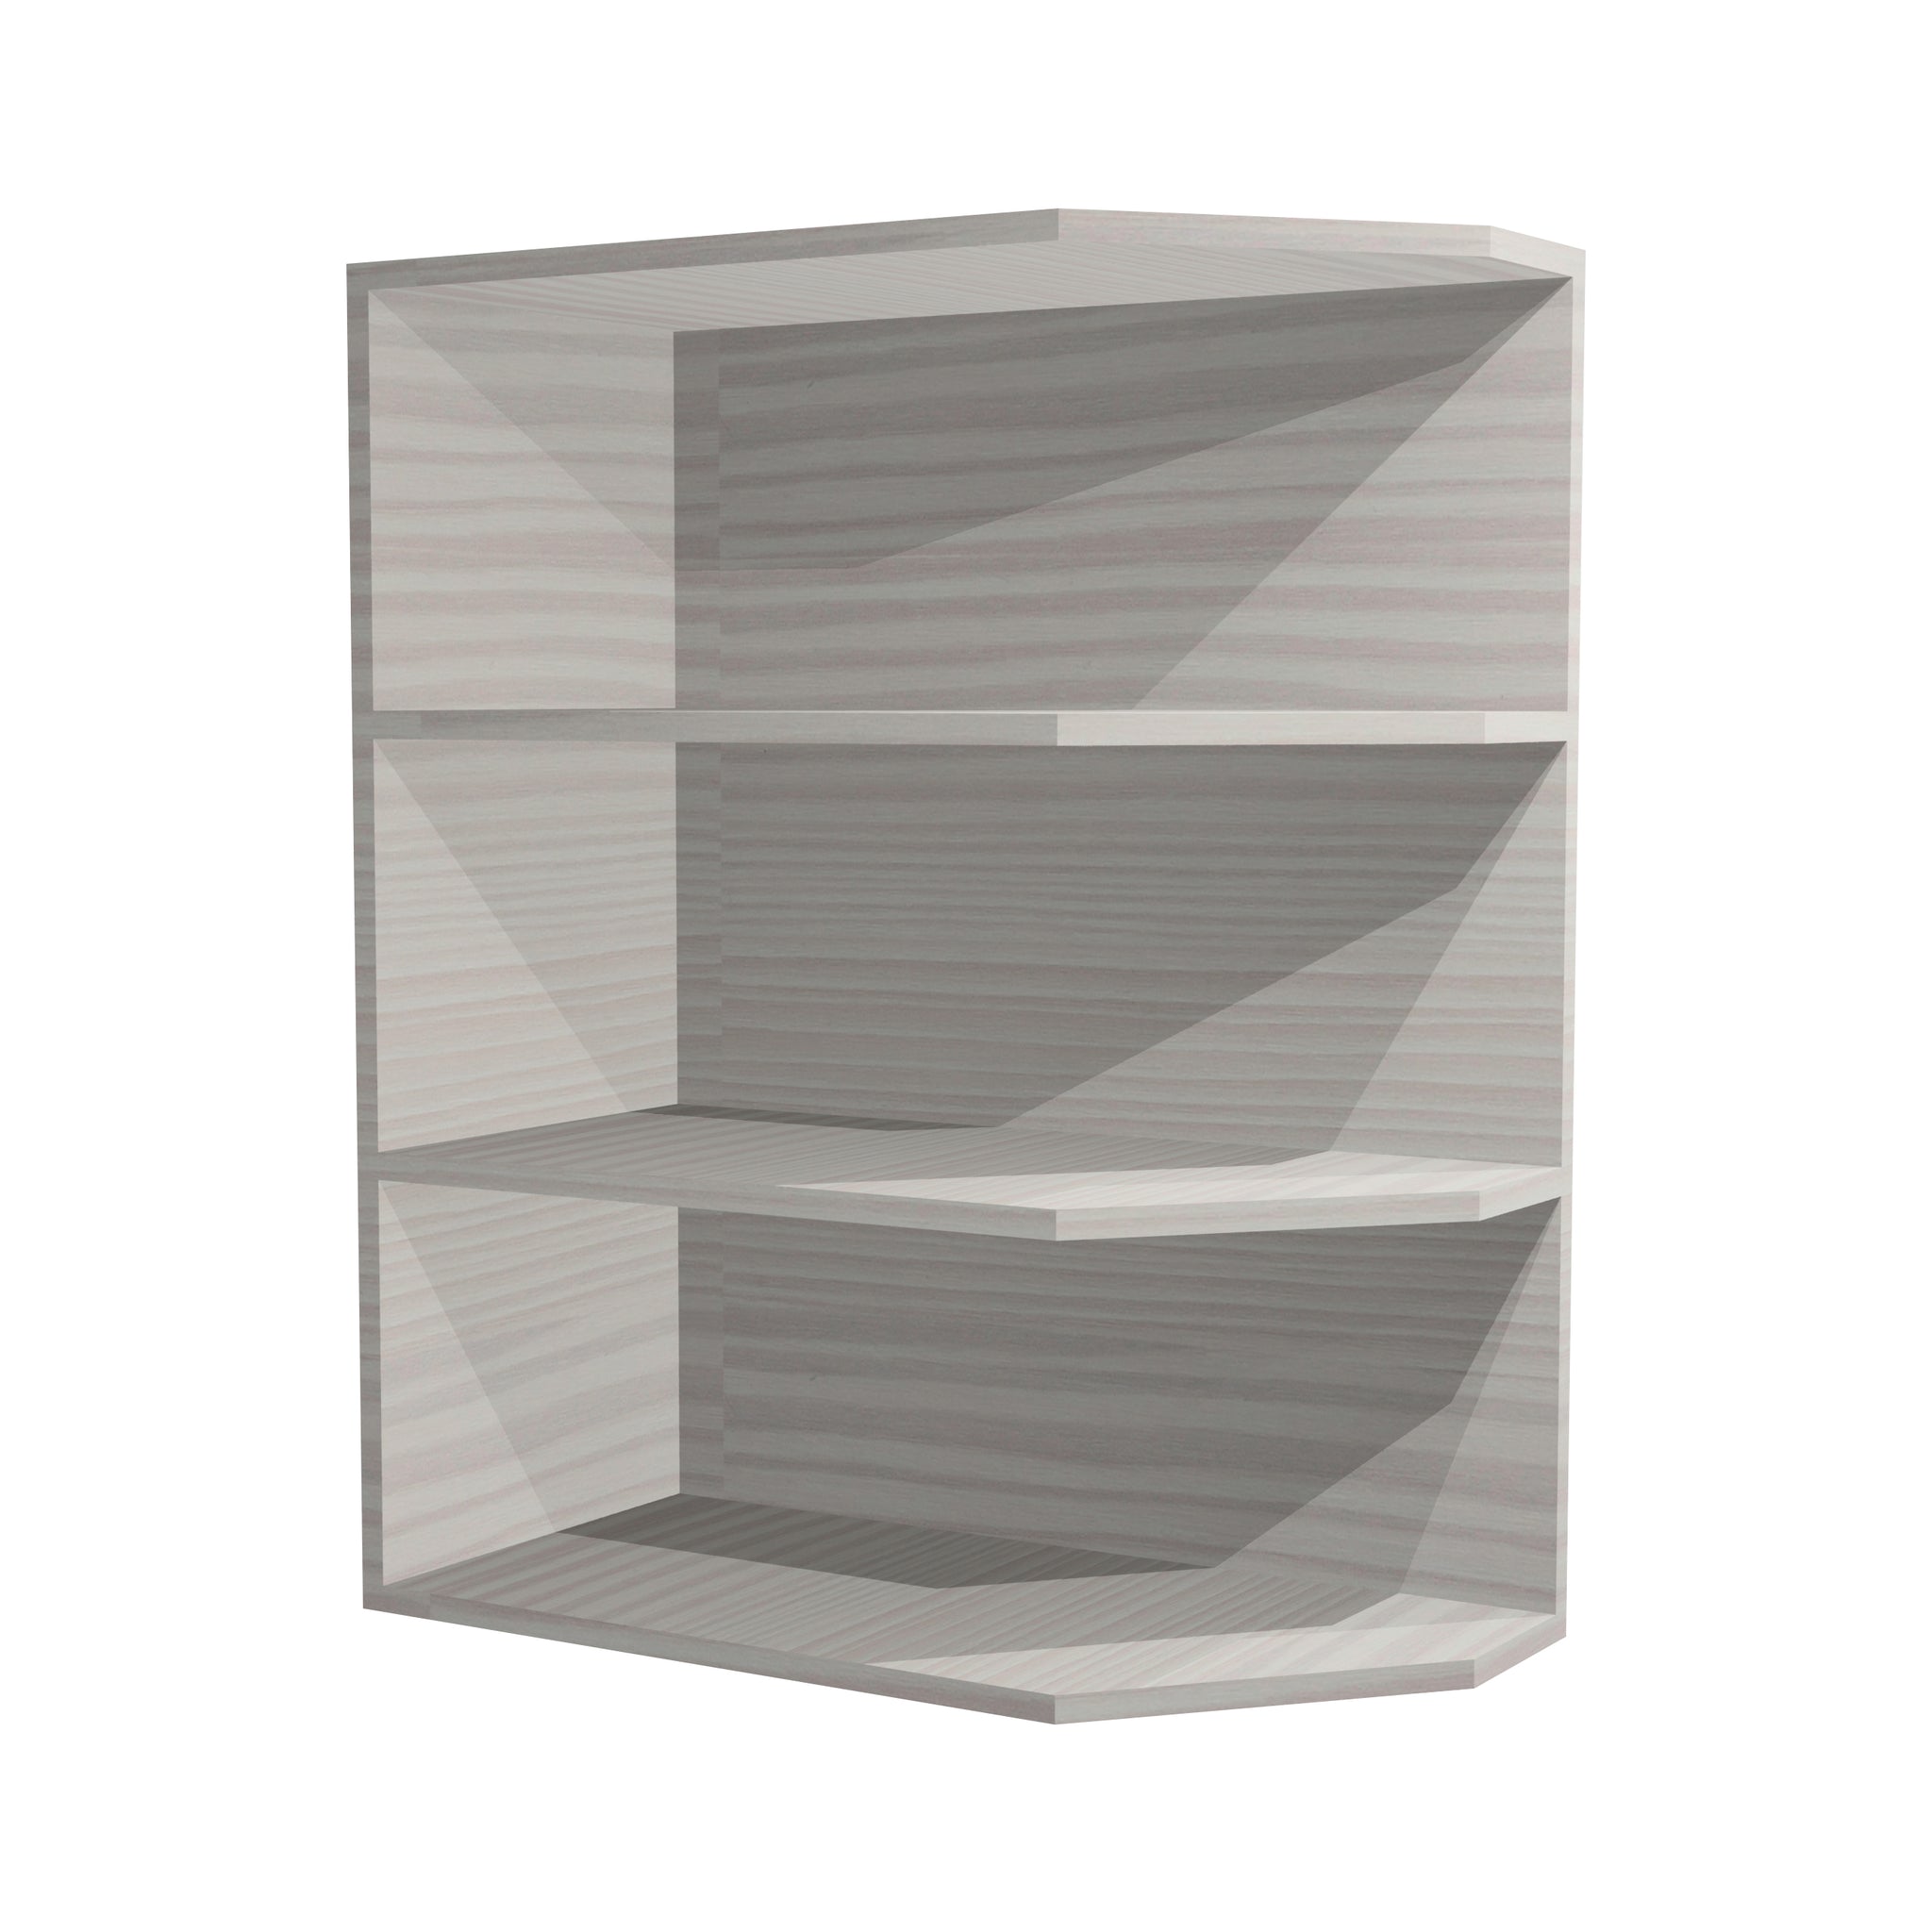 RTA - Pale Pine - Base End Shelf Cabinet | 12"W x 34.5"H x 24"D